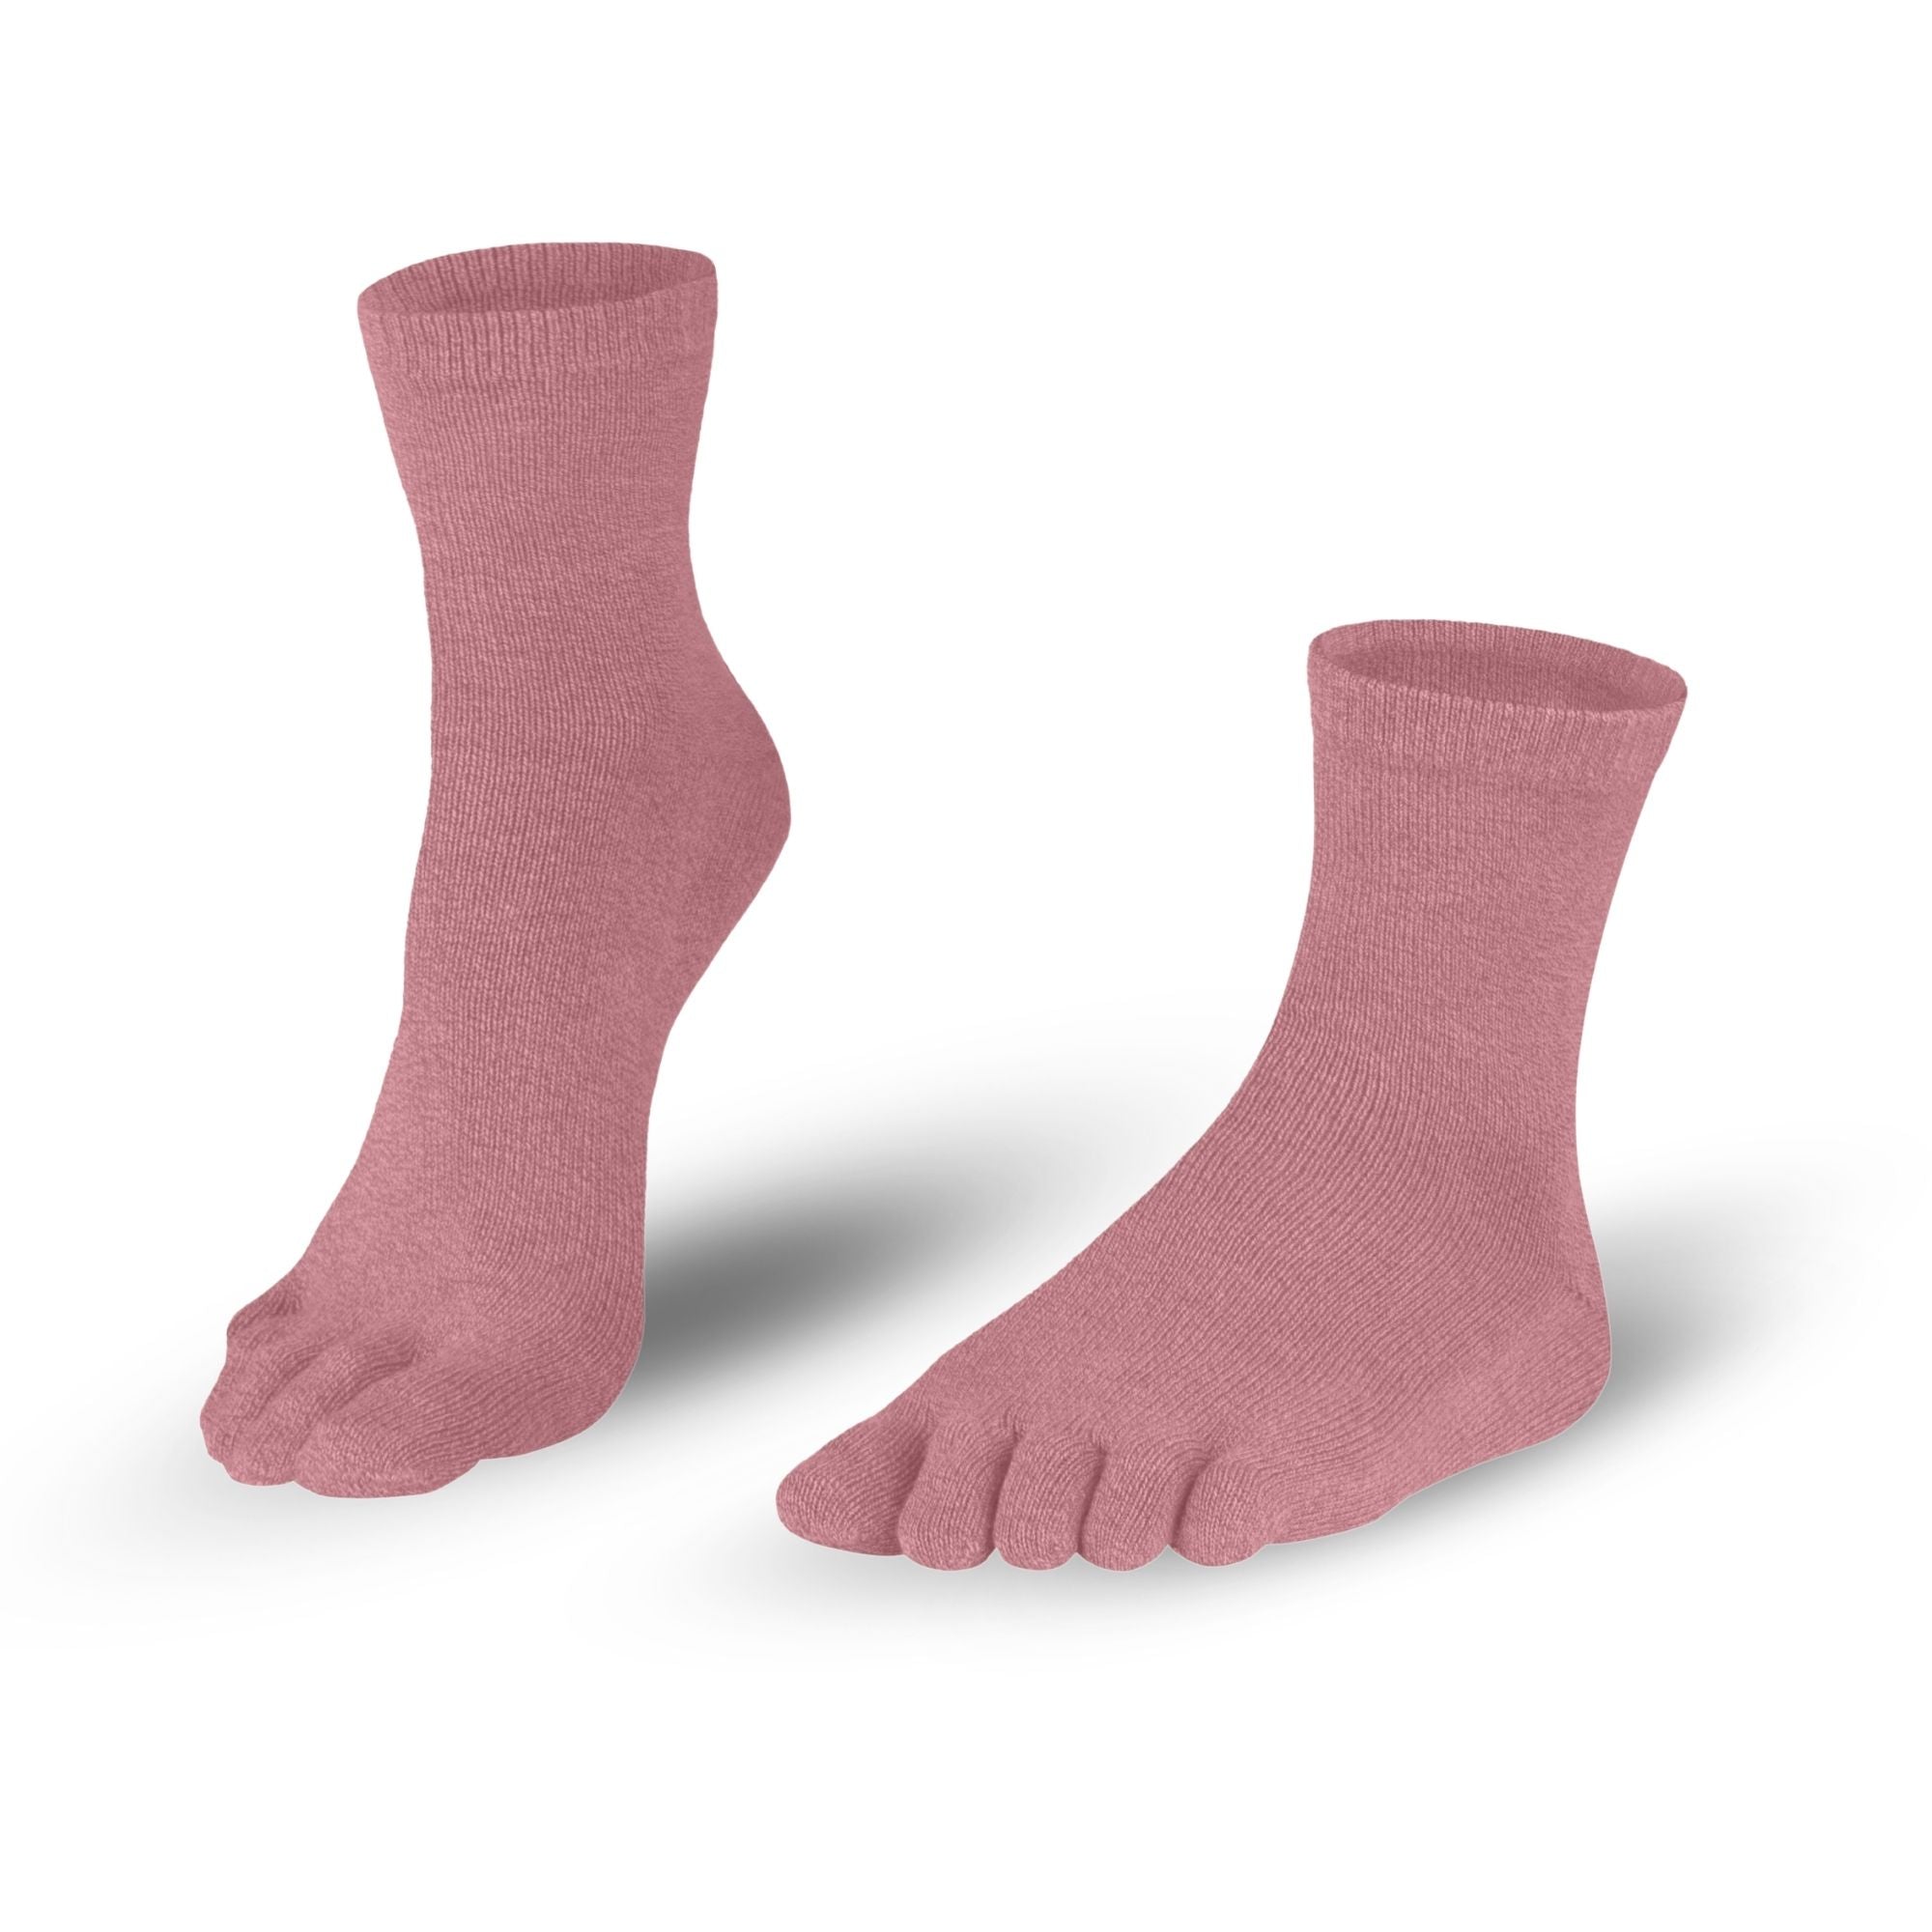 Dameskatoenteensokken sokken in roze